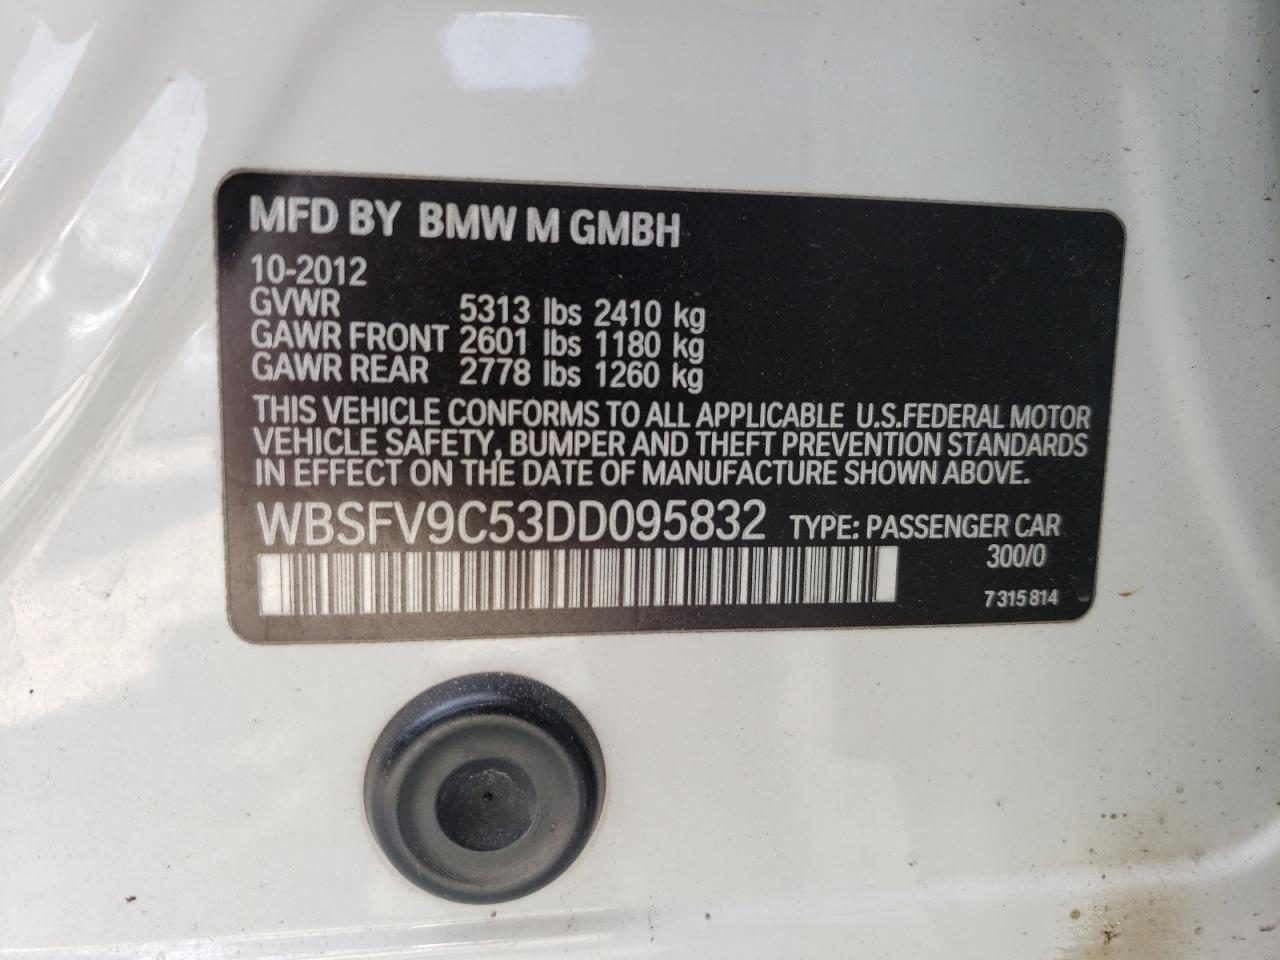 WBSFV9C53DD095832  - BMW M5  2013 IMG - 11